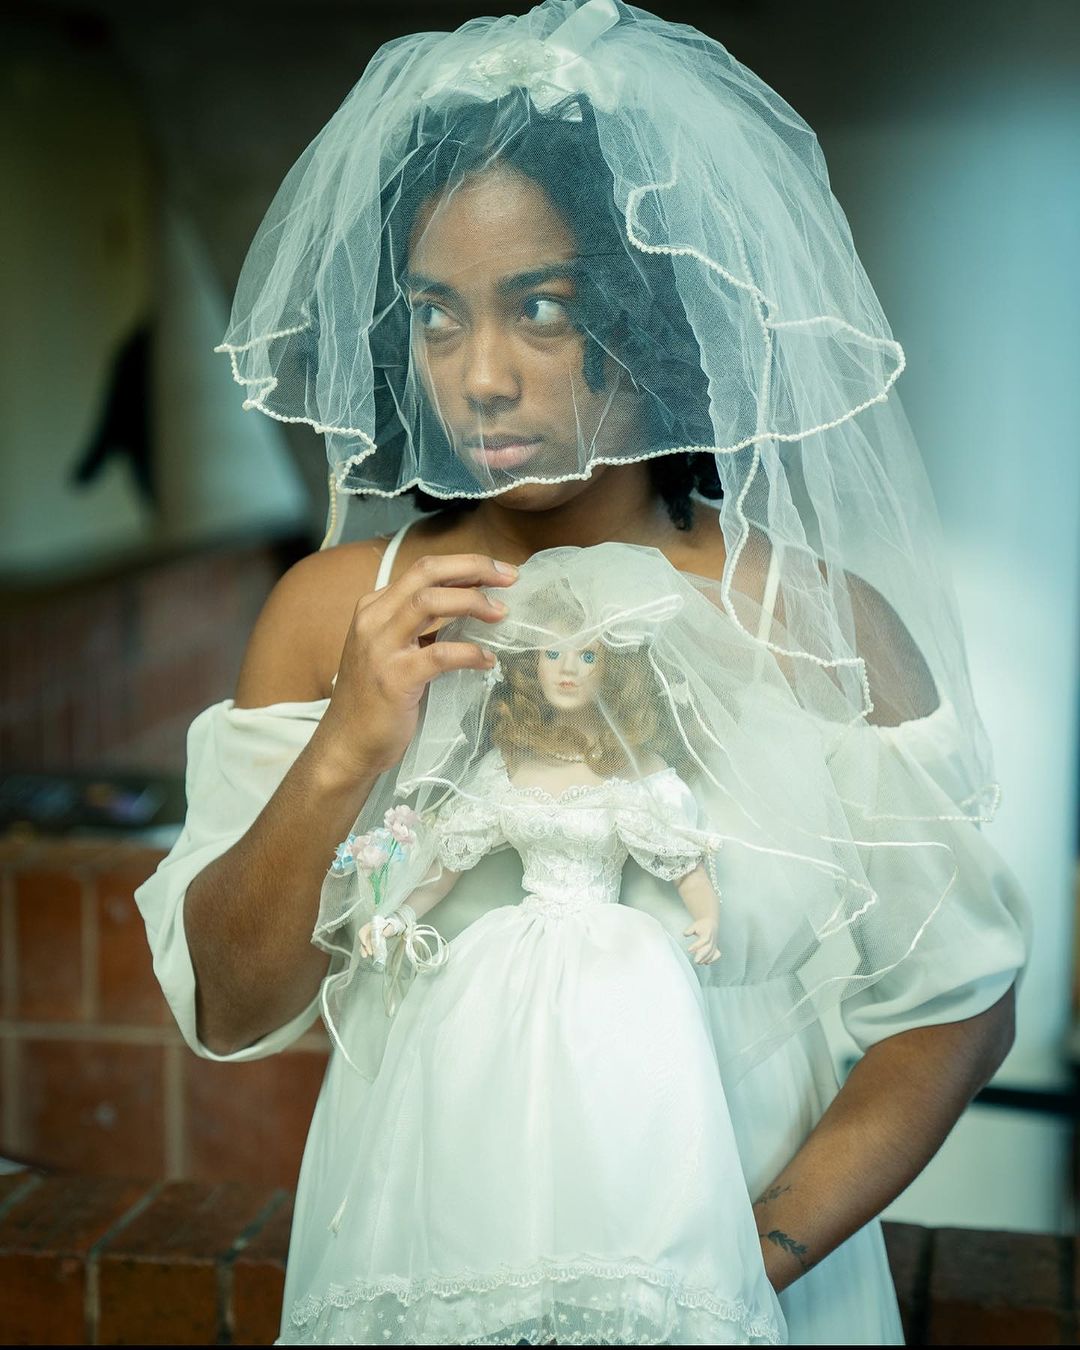 Haunted Bride